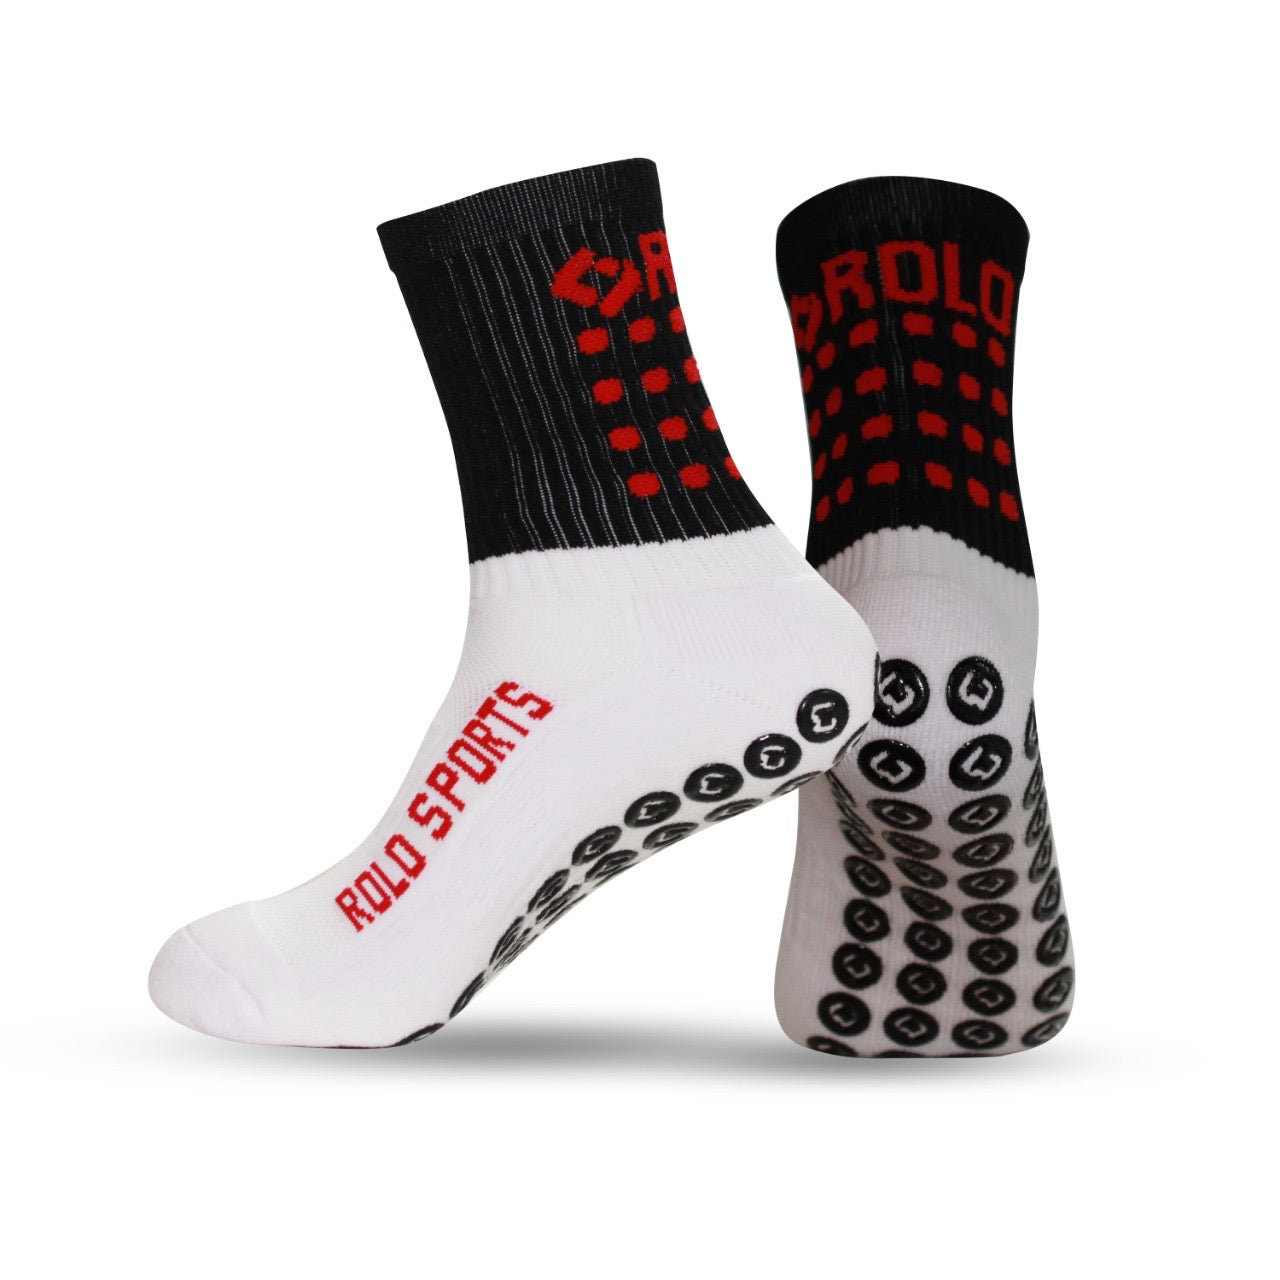 Black & Red Grip Sports Socks